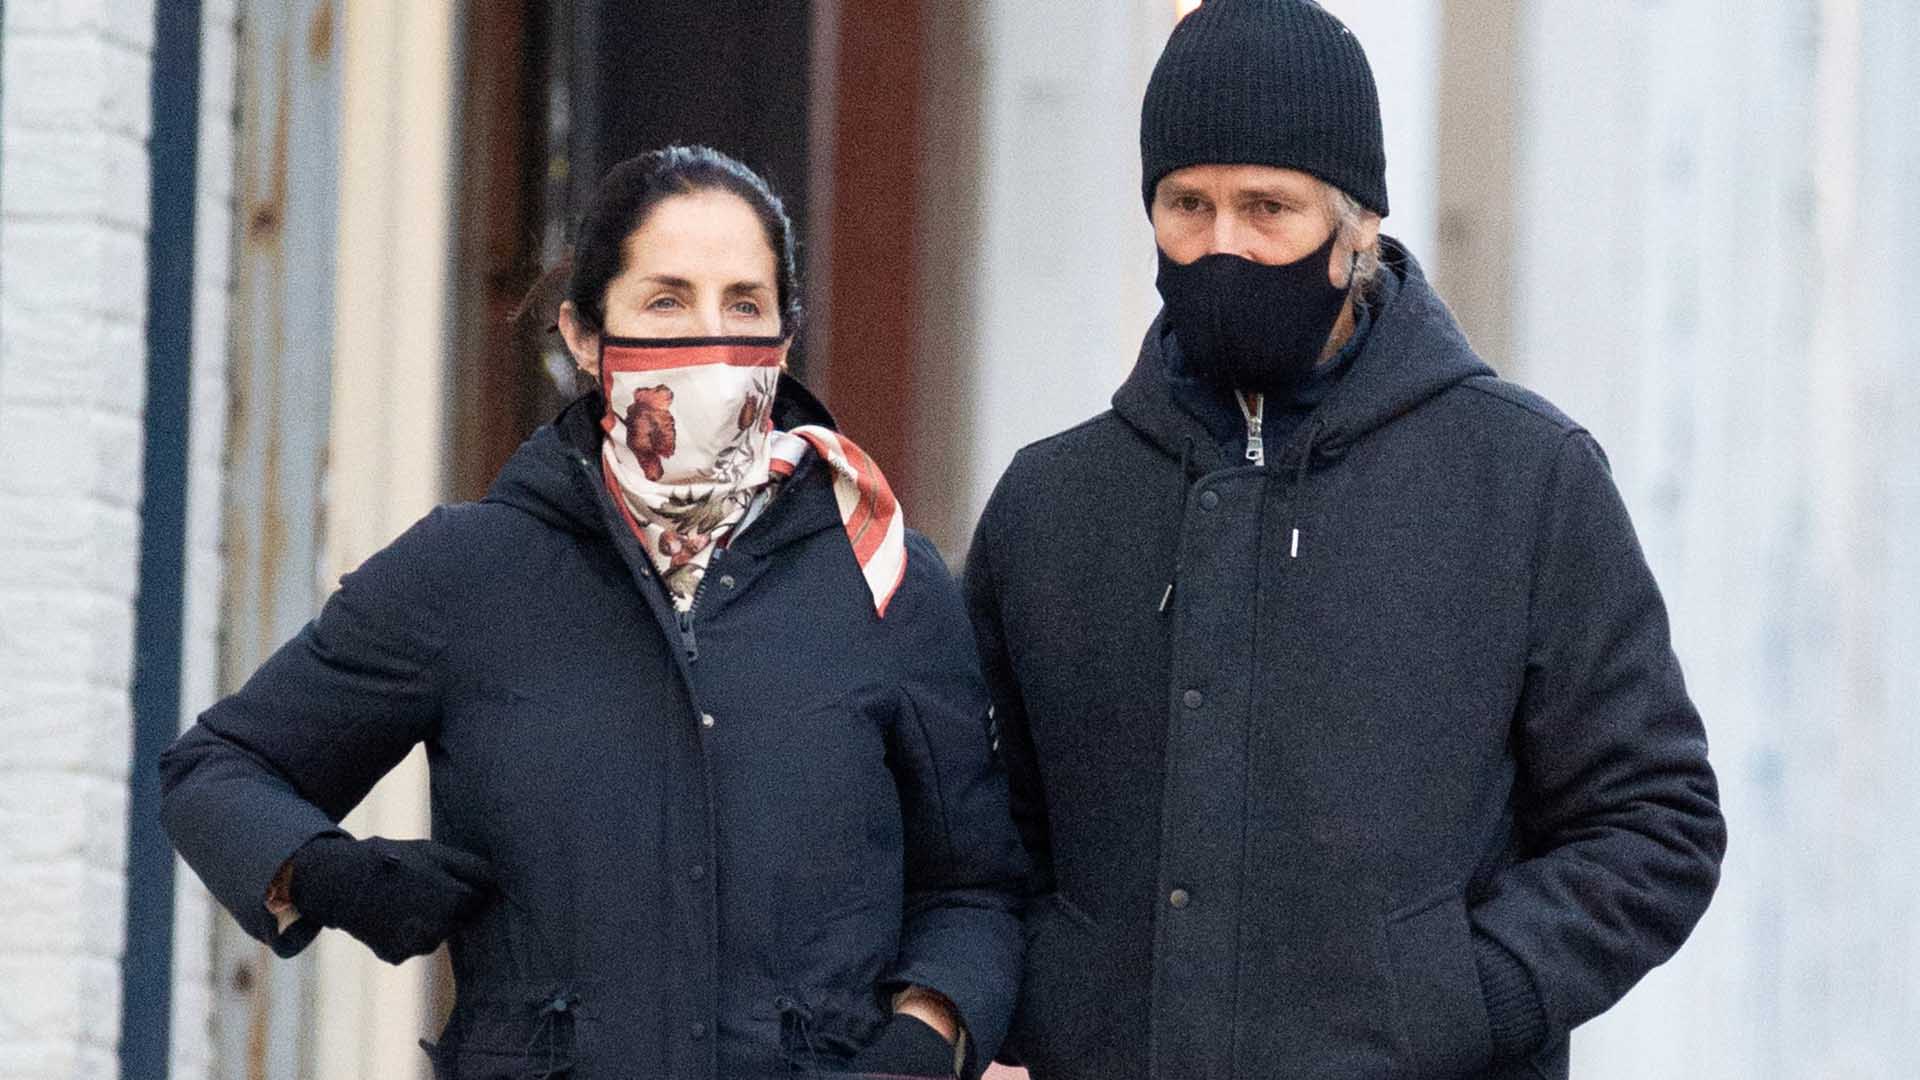 Adriana Carolina Herrera and Francisco Bosch in  New York City, NY, USA on December 28, 2020